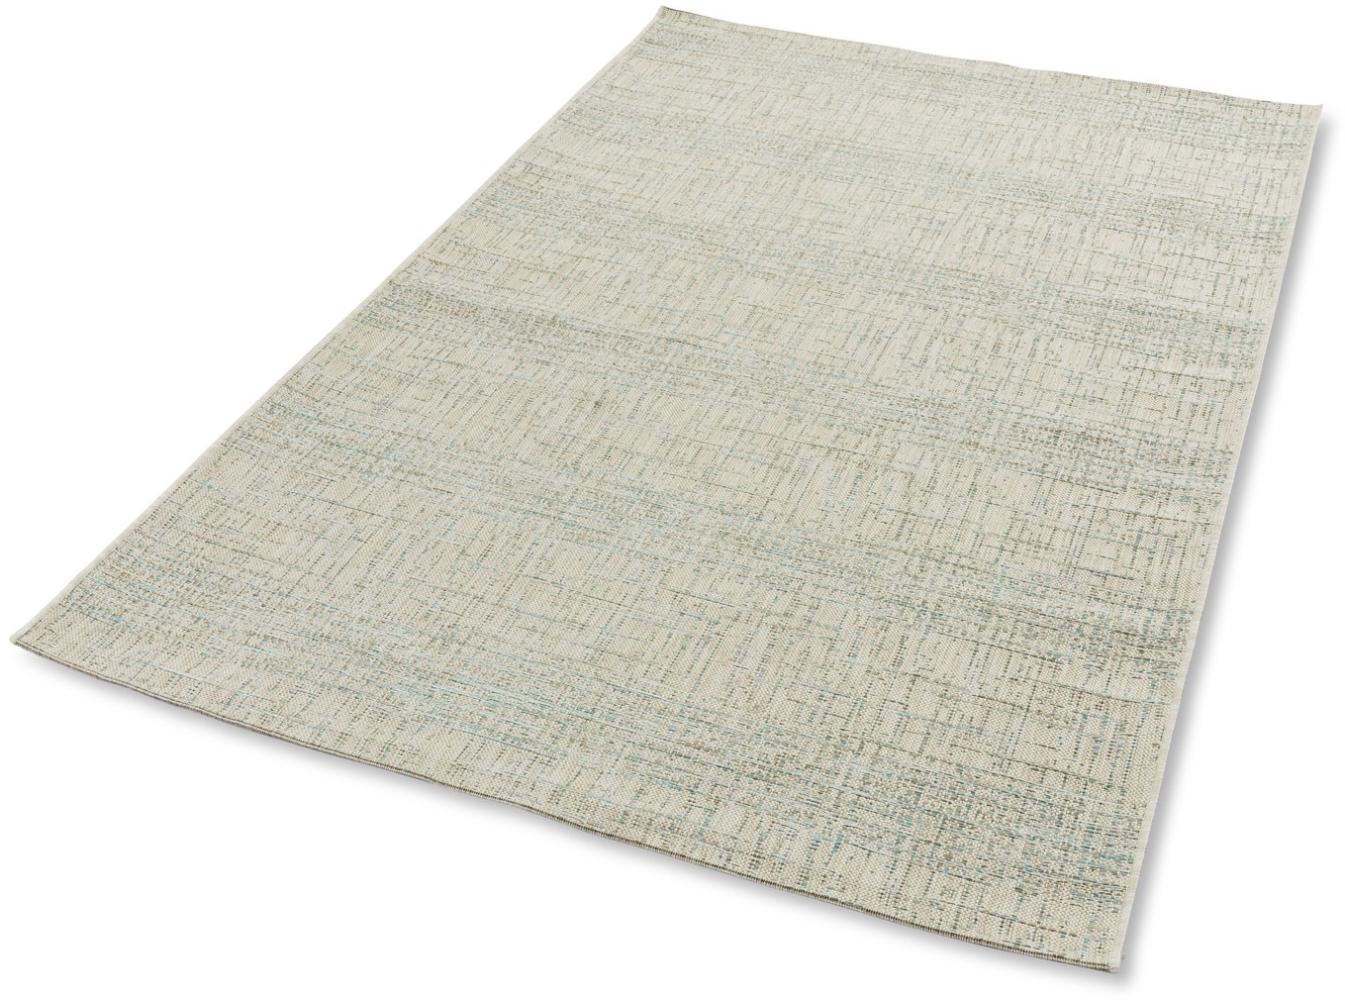 Teppich in aqua aus 100% Polypropylen - 170x120x1cm (LxBxH) Bild 1